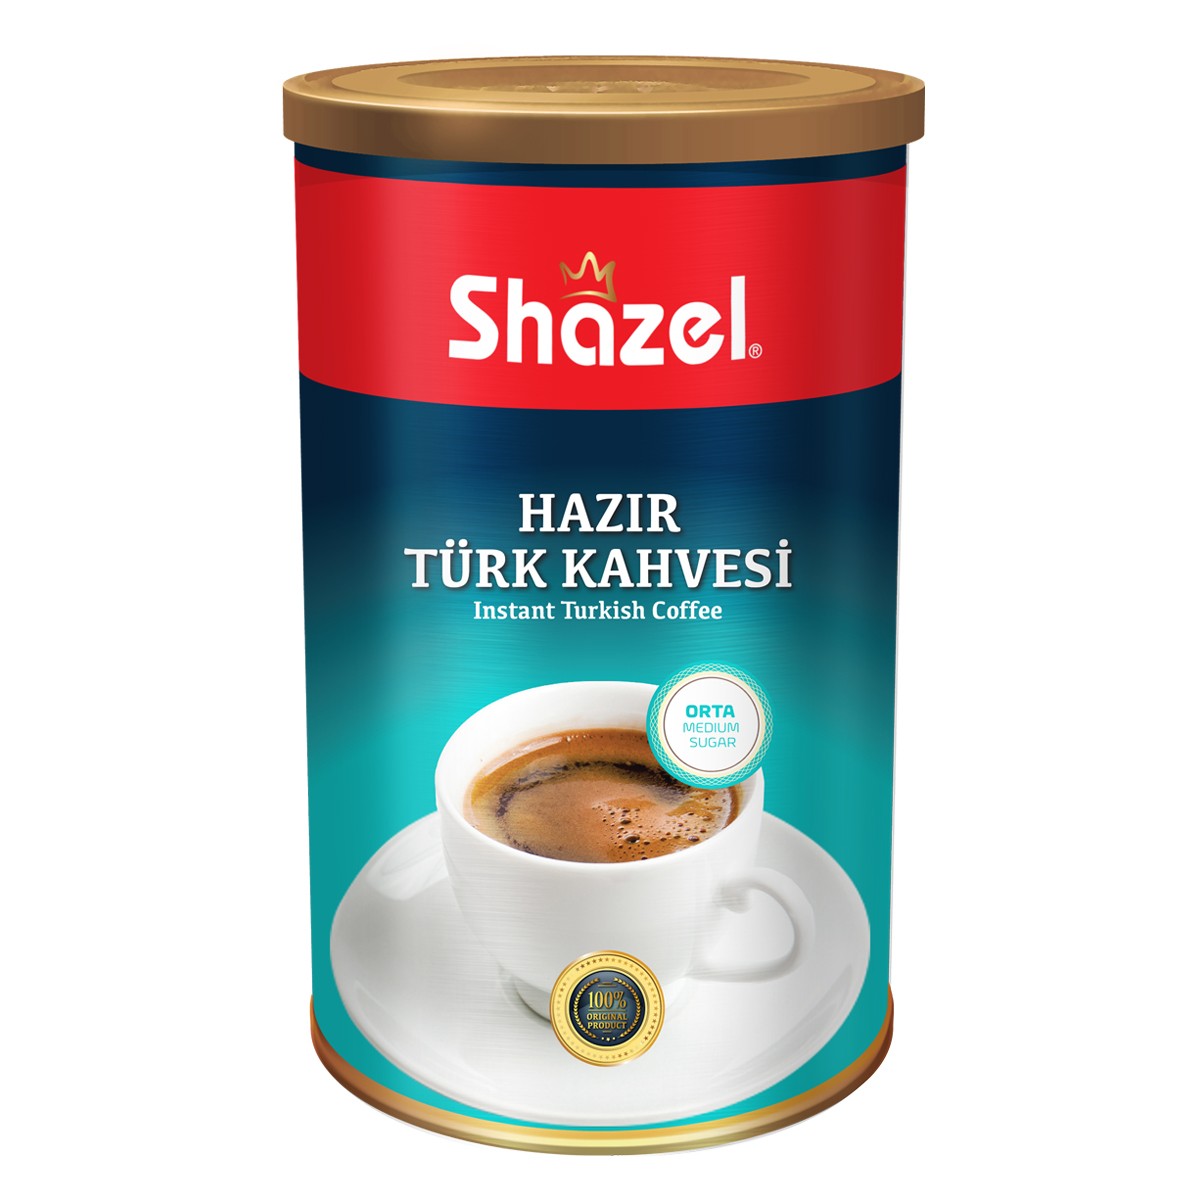 Hazır Türk Kahvesi Orta 250 g teneke x 12 adet